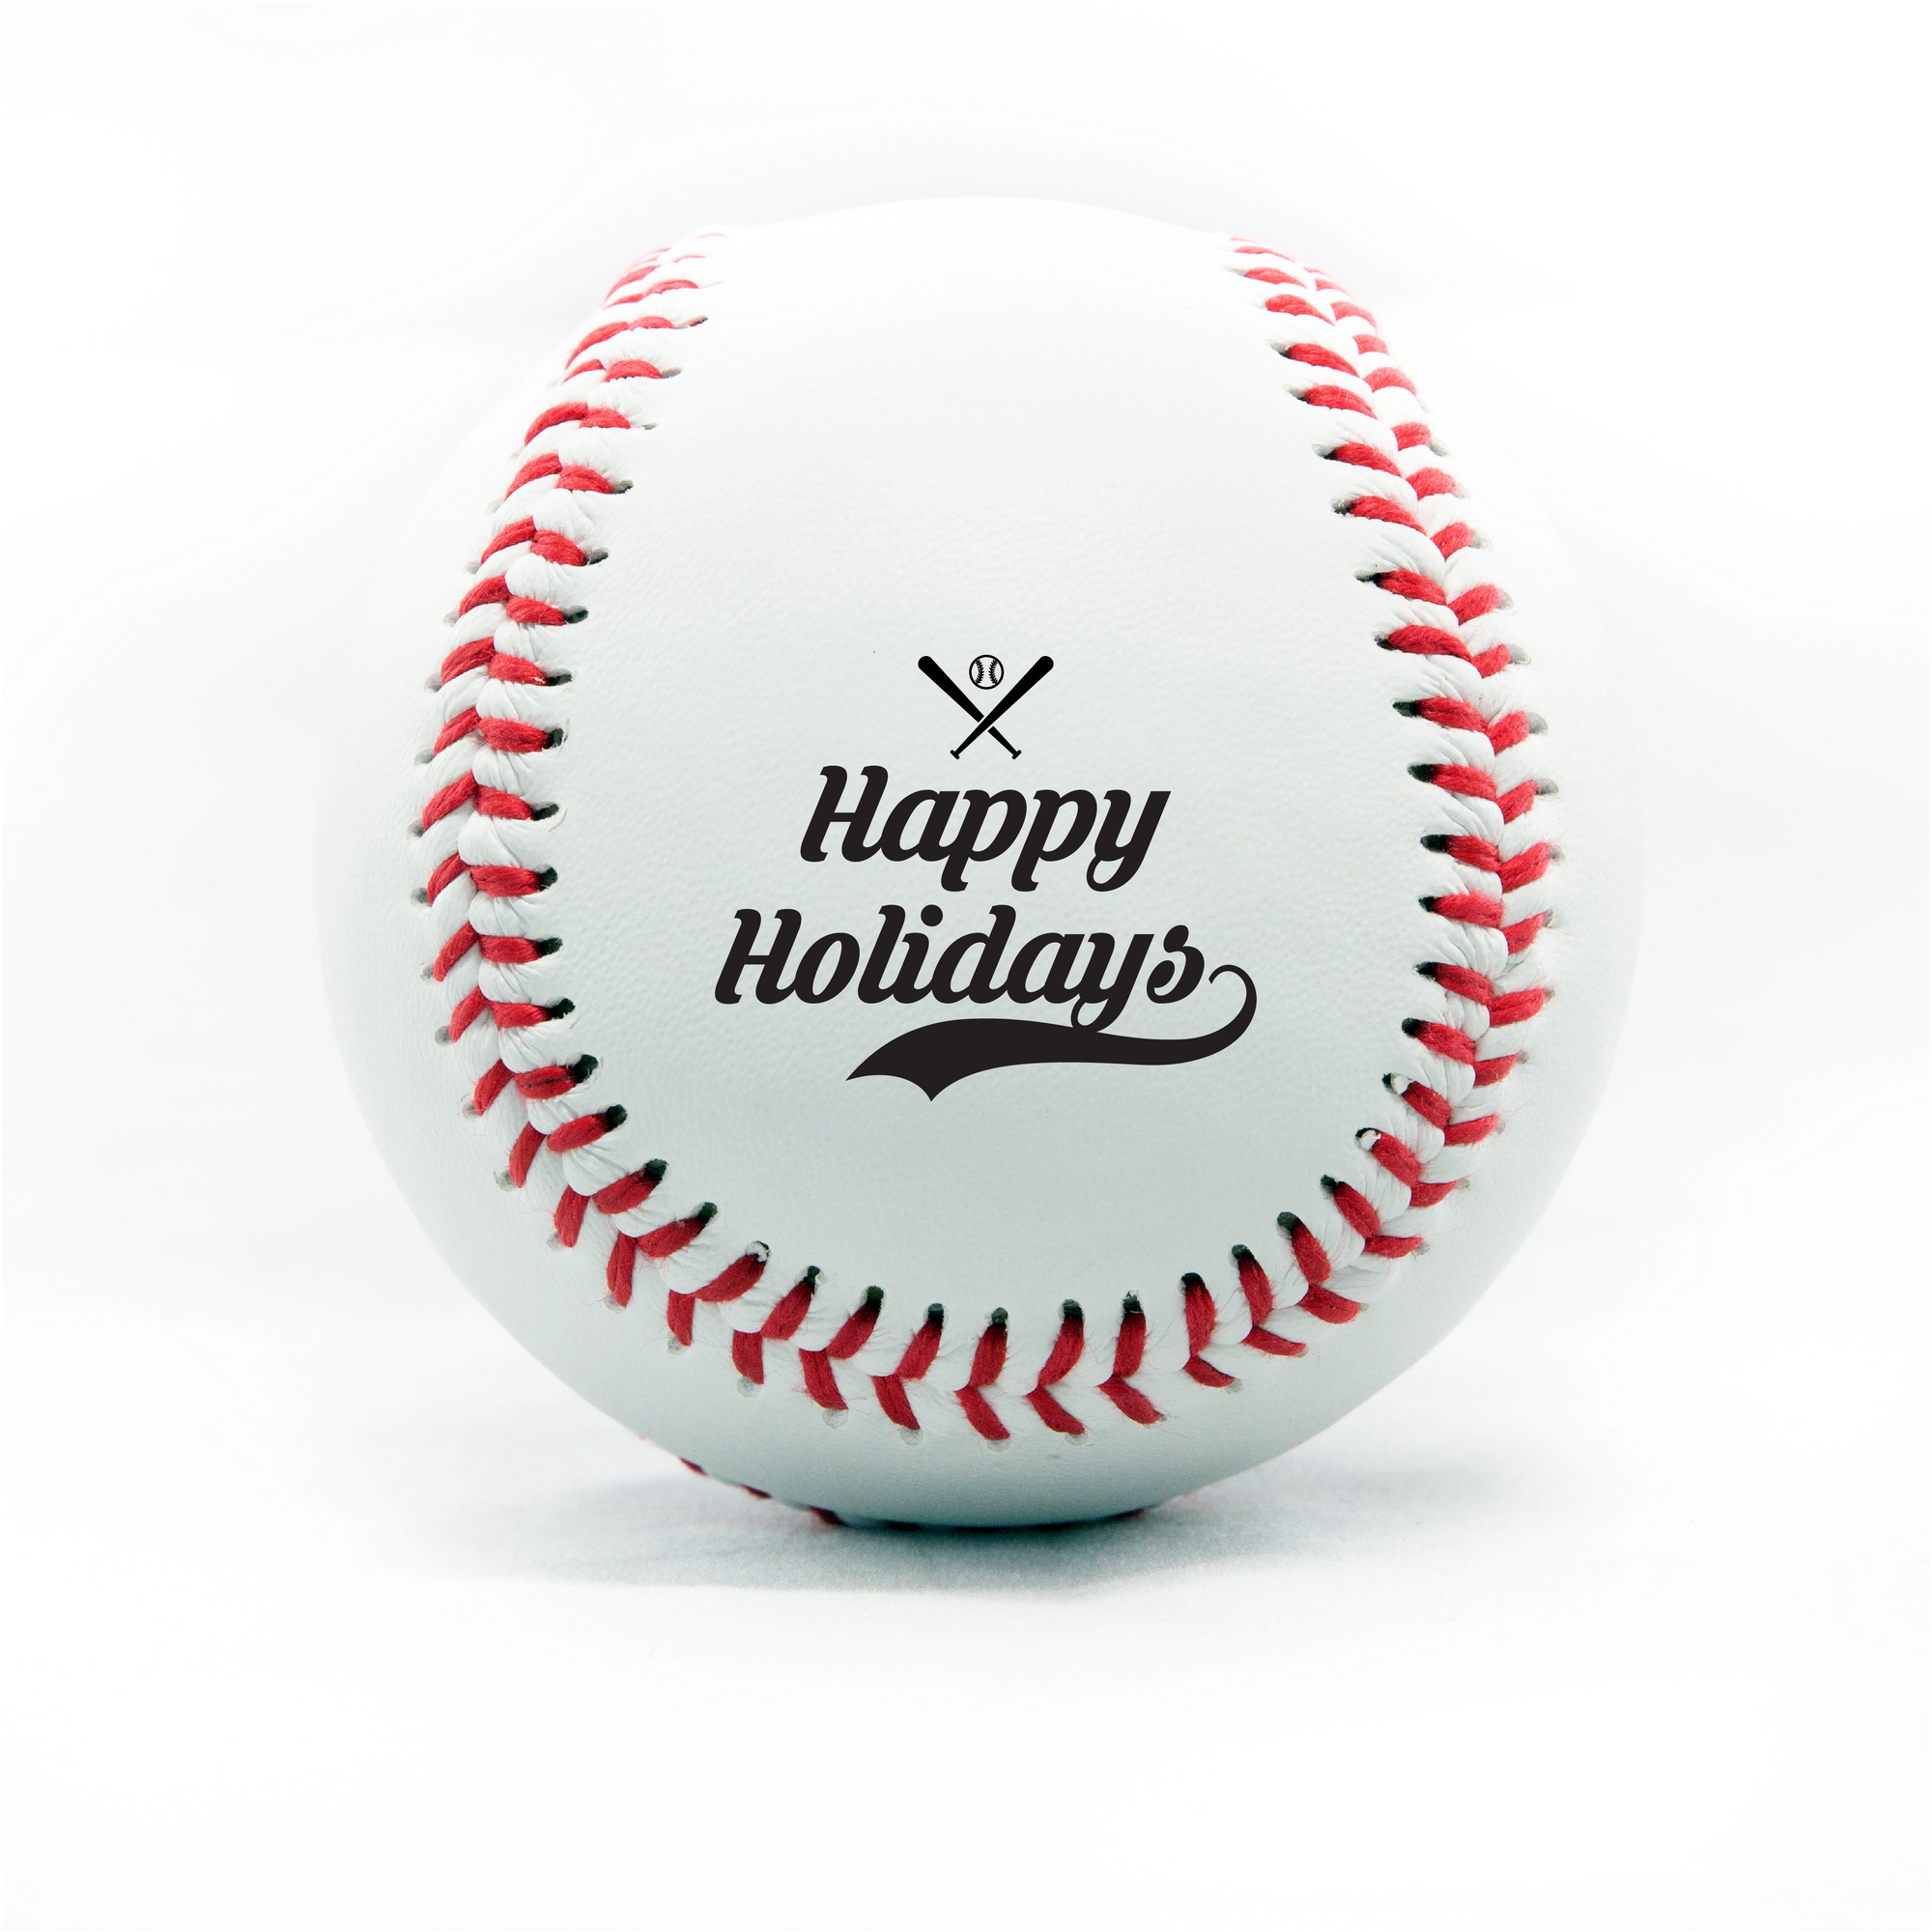 Merry Christmas, Printed Baseball